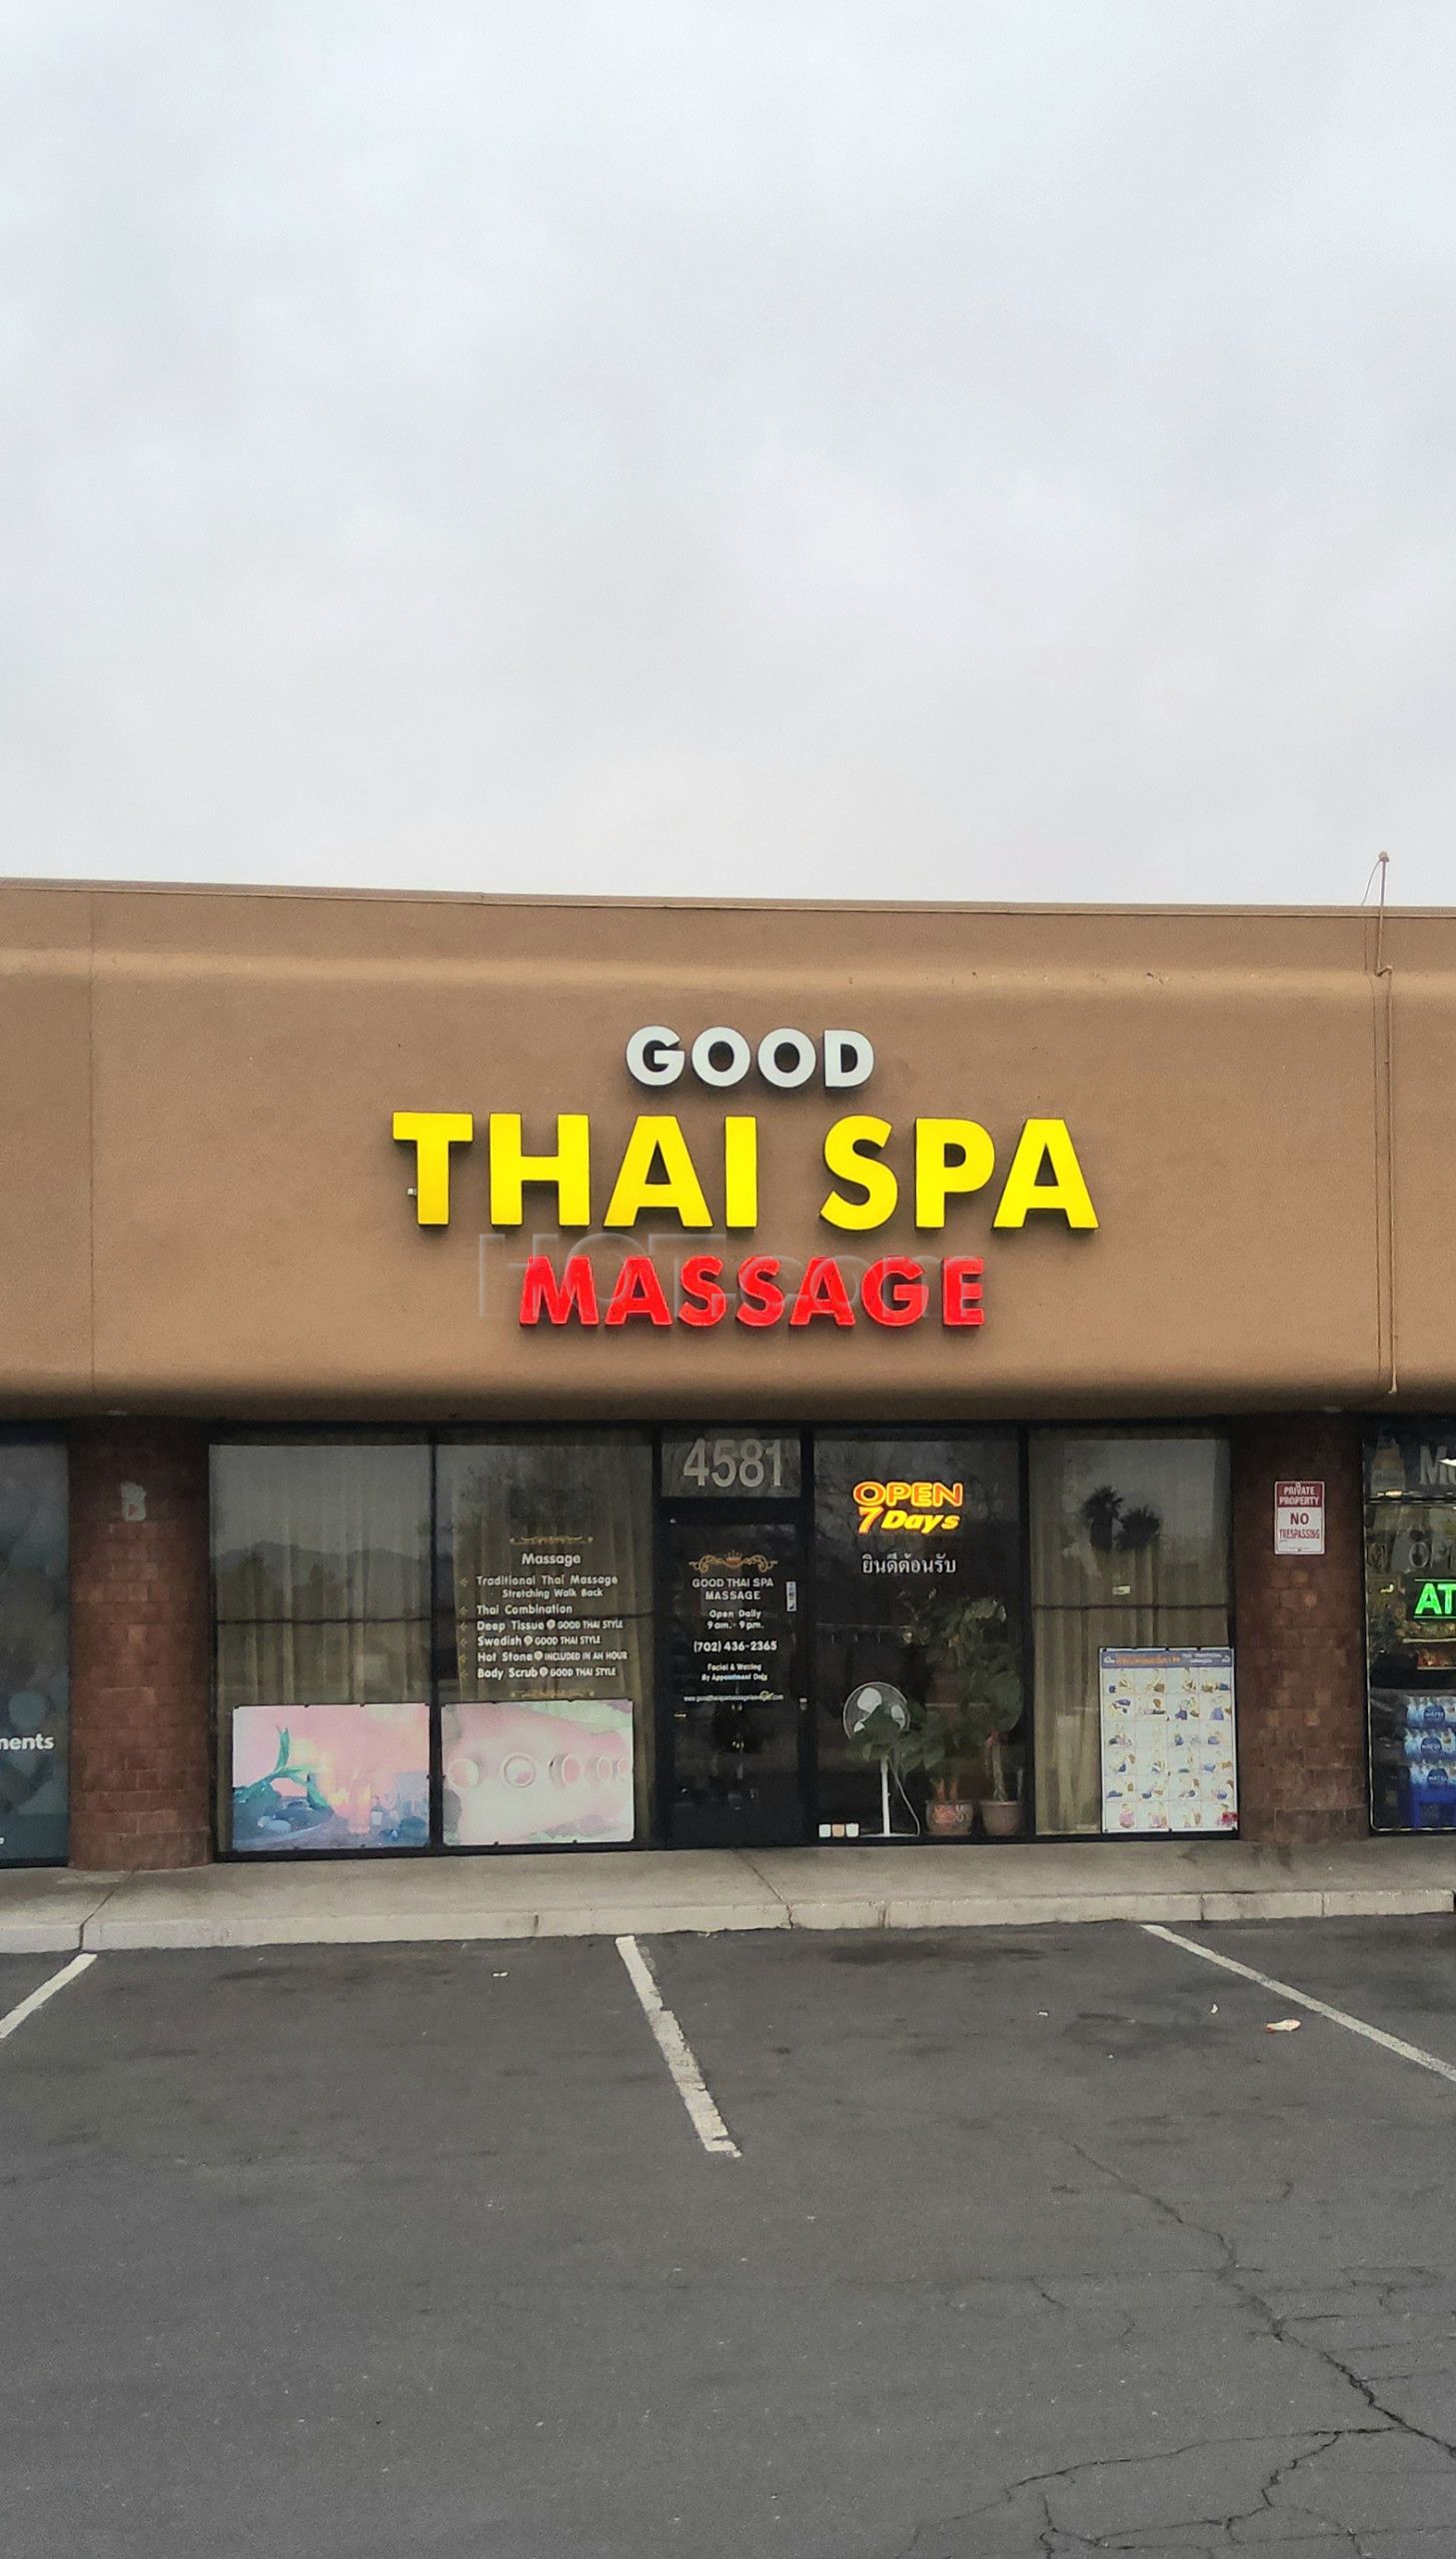 Las Vegas, Nevada Good Thai Spa Massage